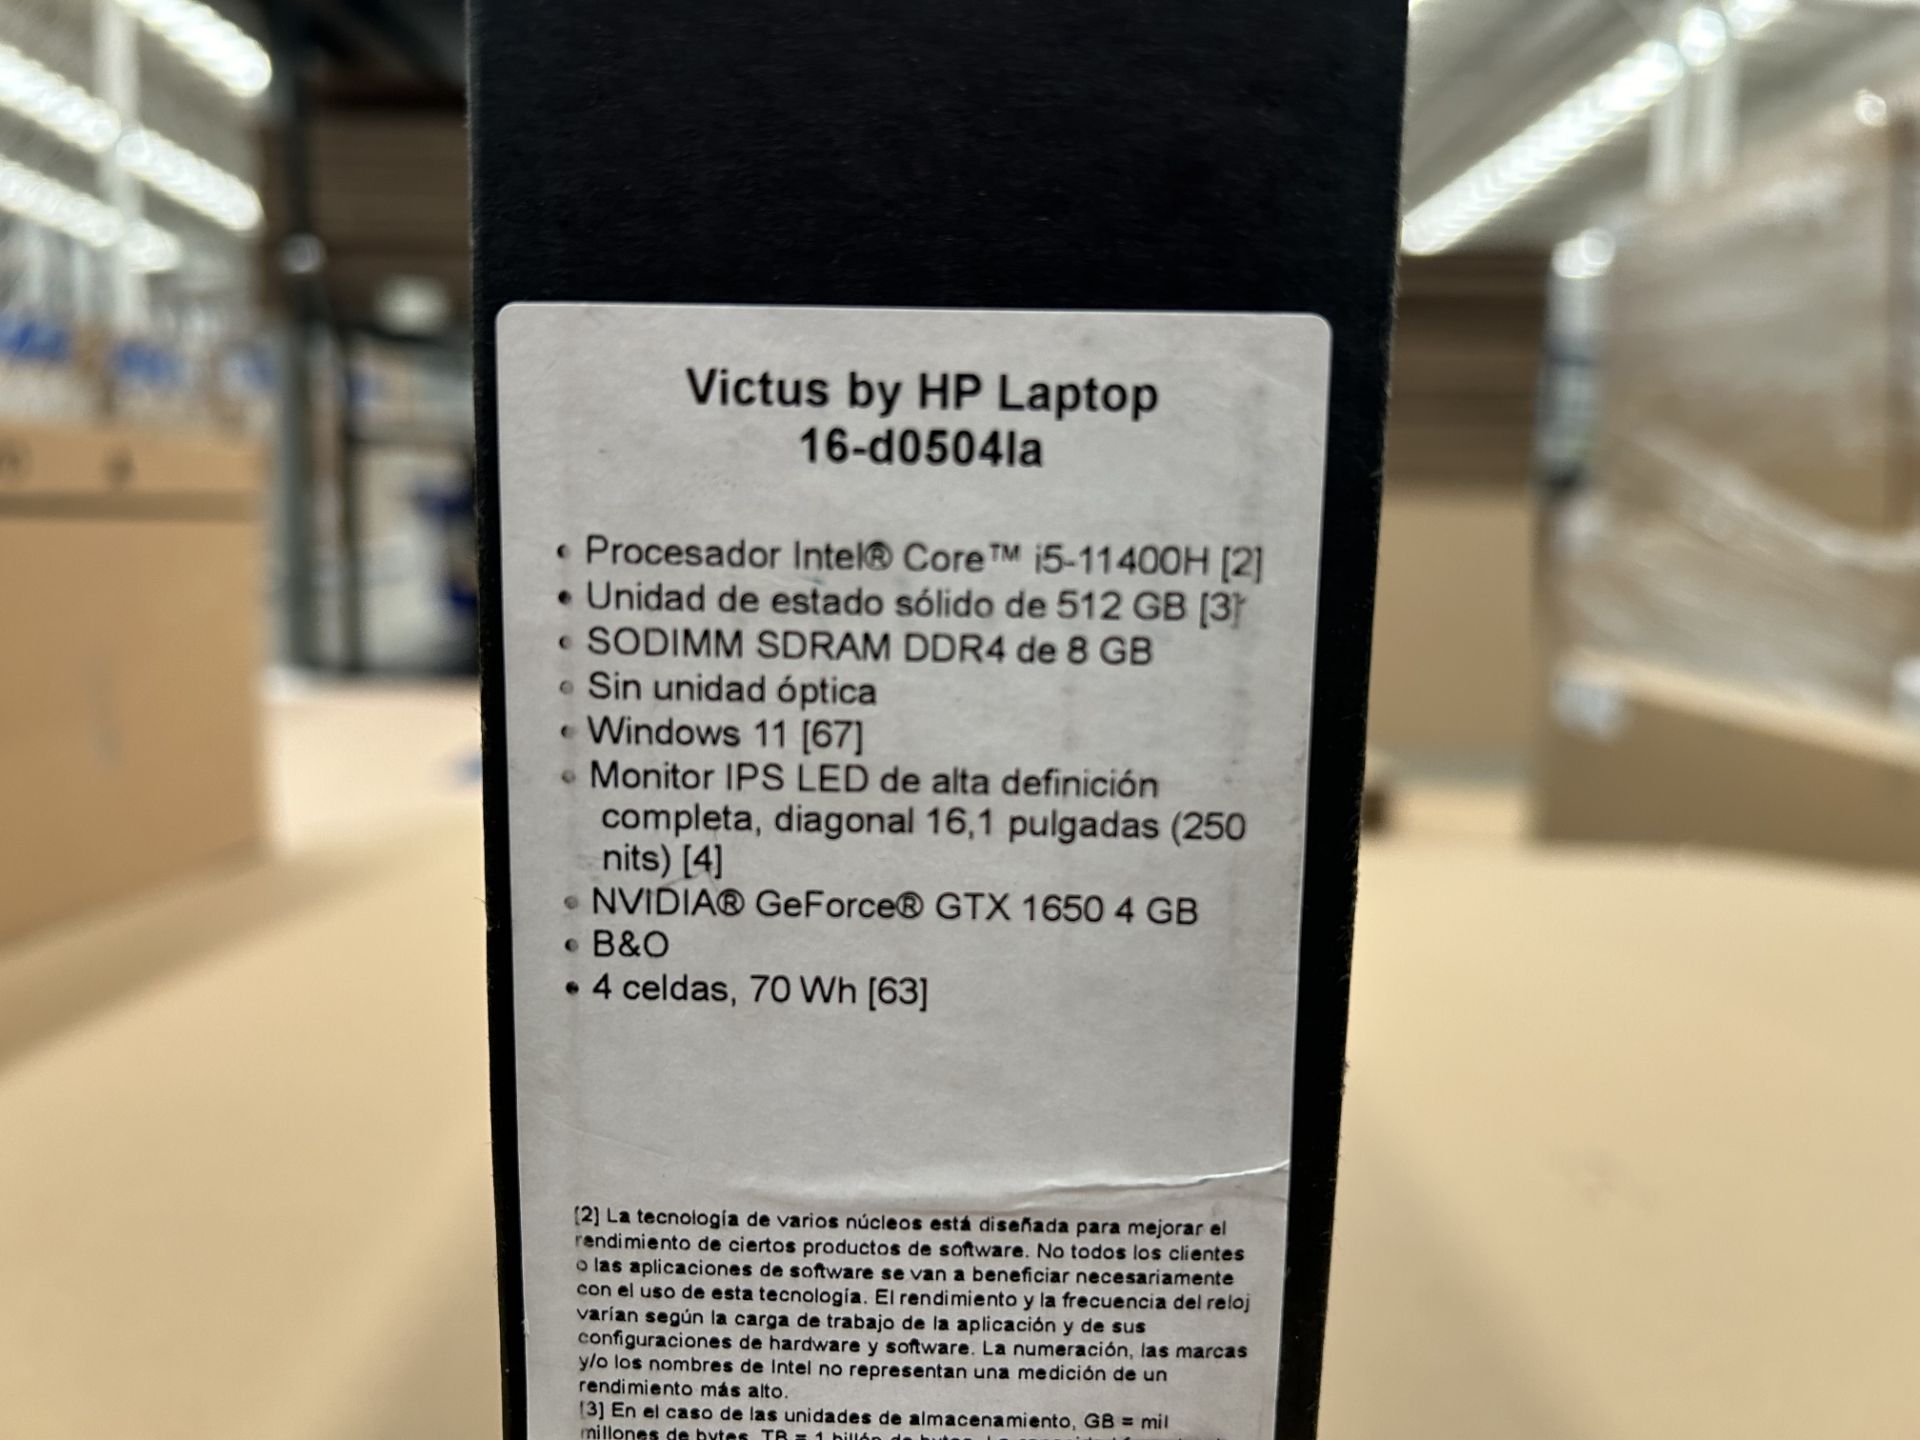 (Nuevo) Lote de 1 laptop Marca HP, Modelo VICTUS 16D054LA, Procesador INTEL CORE i5, almacenamiento - Bild 3 aus 4